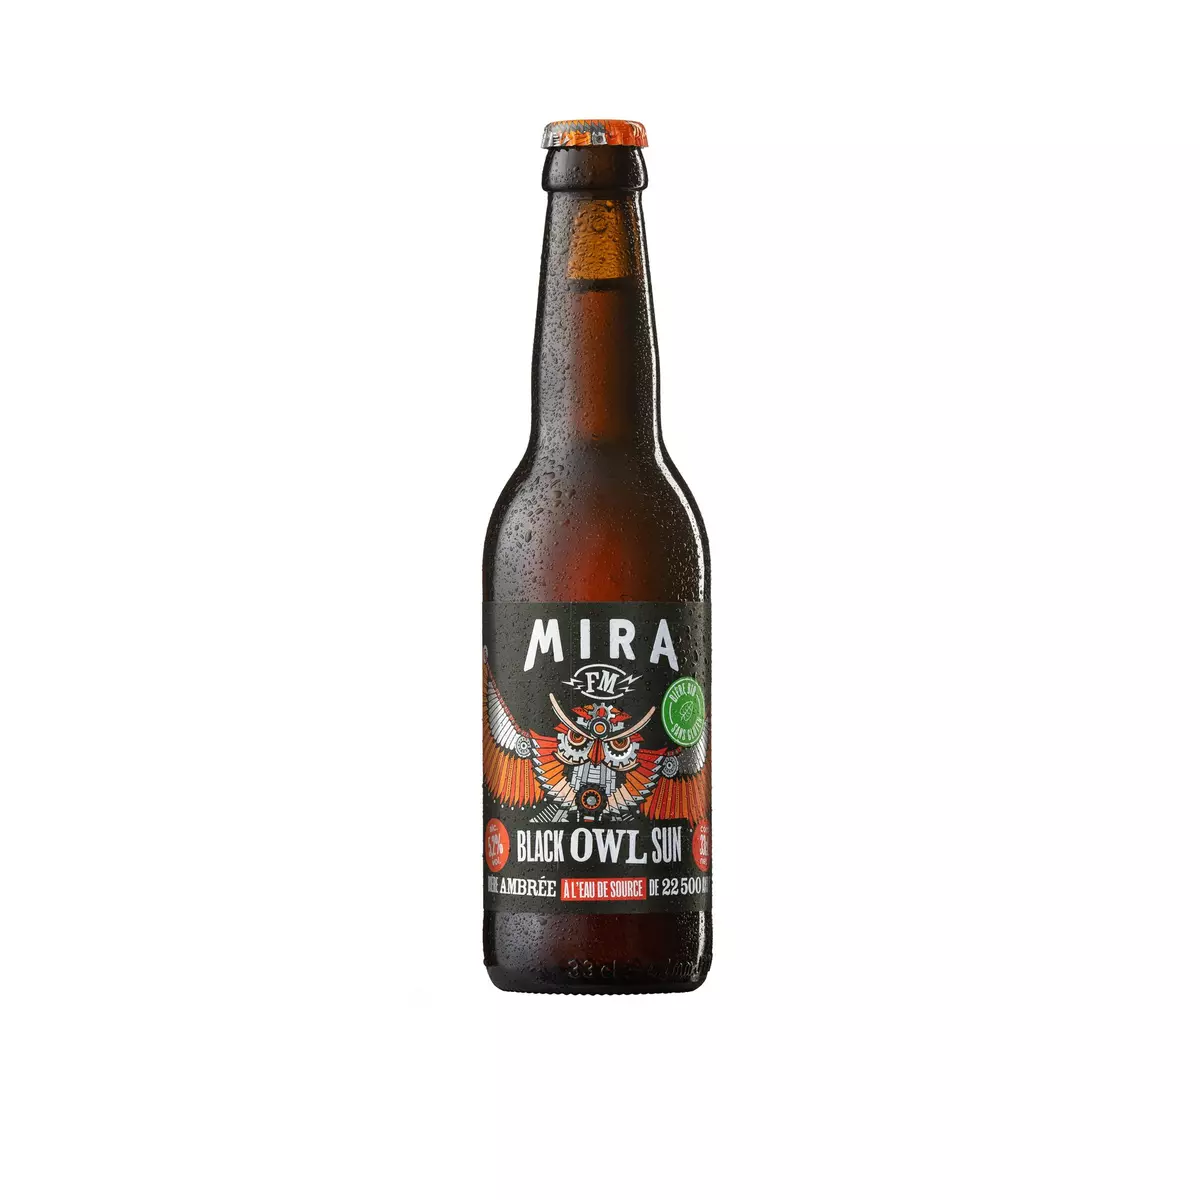 MIRA Bière ambrée 5.2% bio 33cl